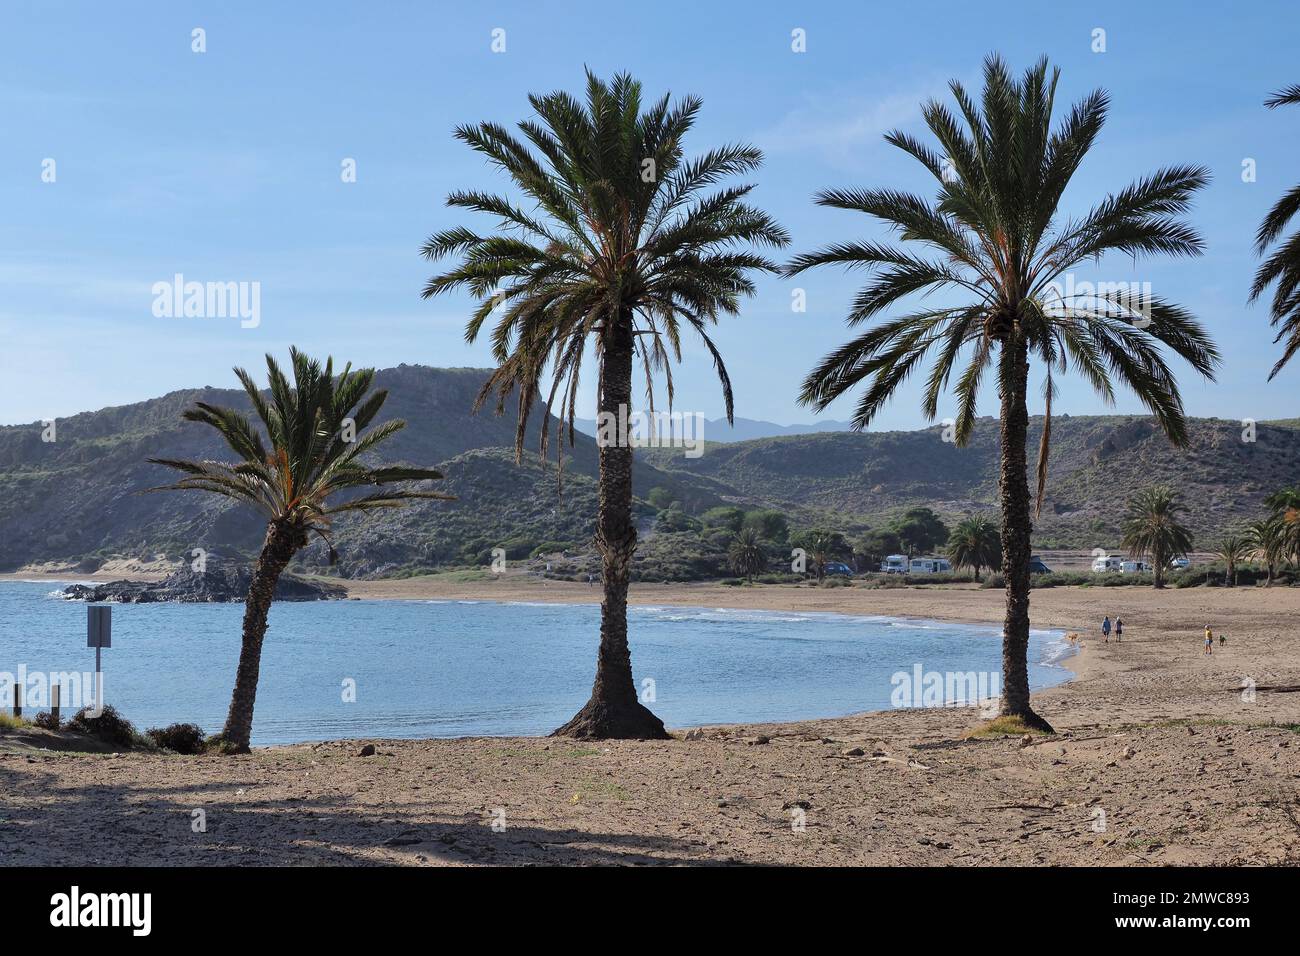 La baie de Snake (Playa Percheles) près de Mazarron avec palmiers, montagnes derrière, parking gratuit pour les camping-cars, Murcia, Espagne Banque D'Images